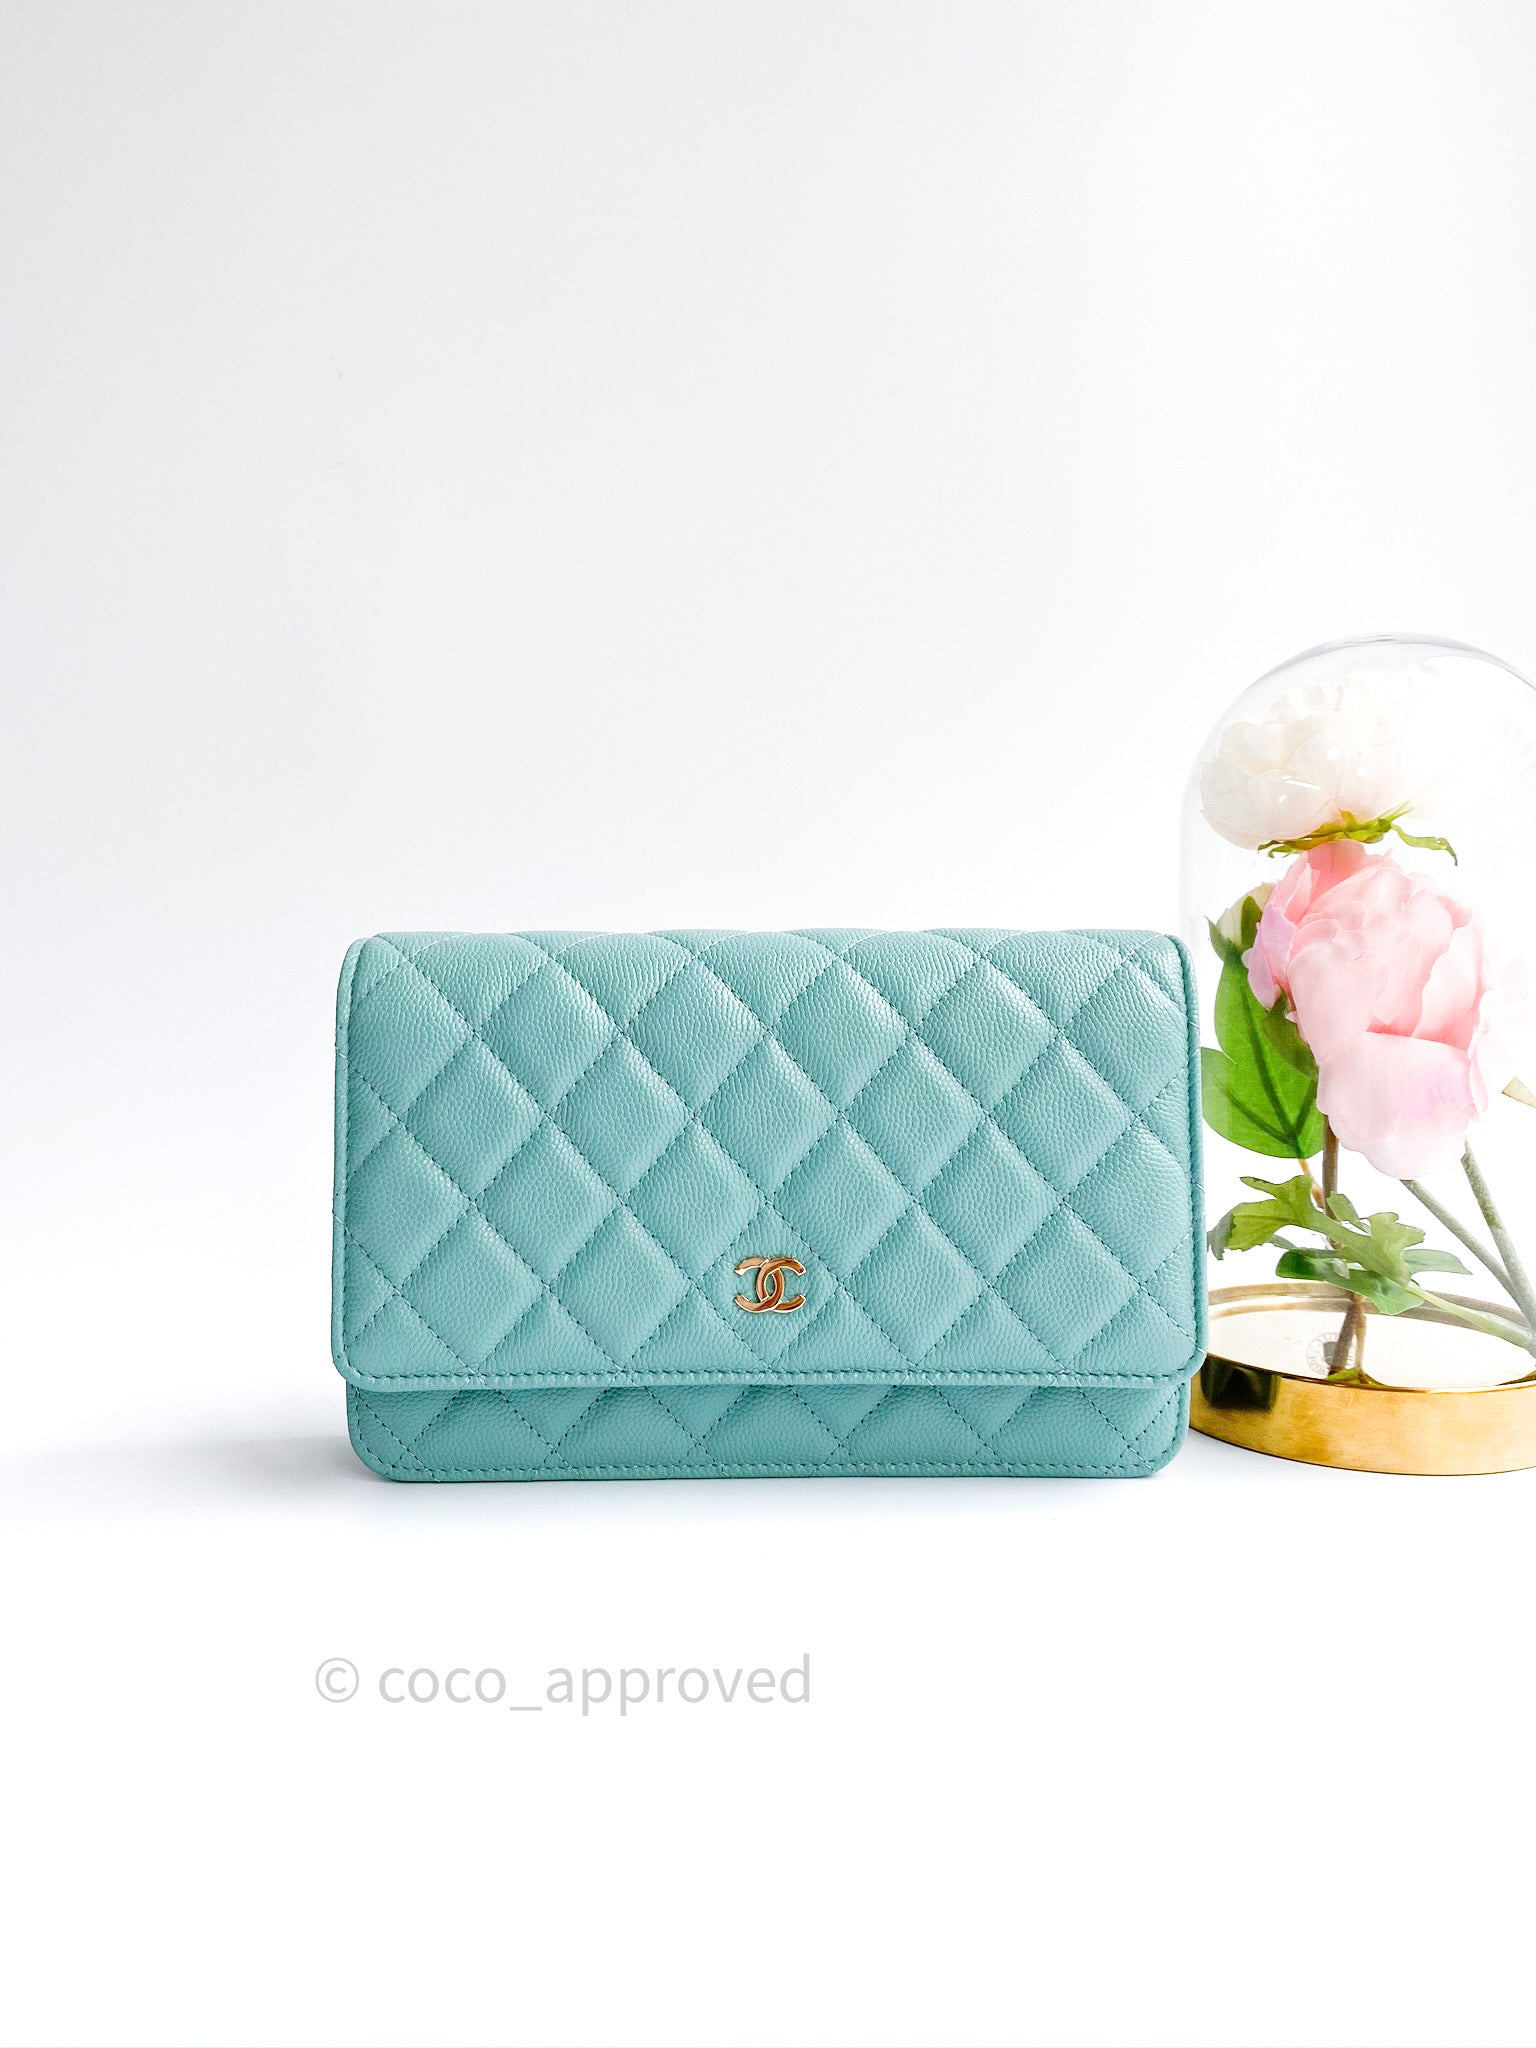 CHANEL 19C Tiffany Blue Caviar XL Card Holder Wallet *New